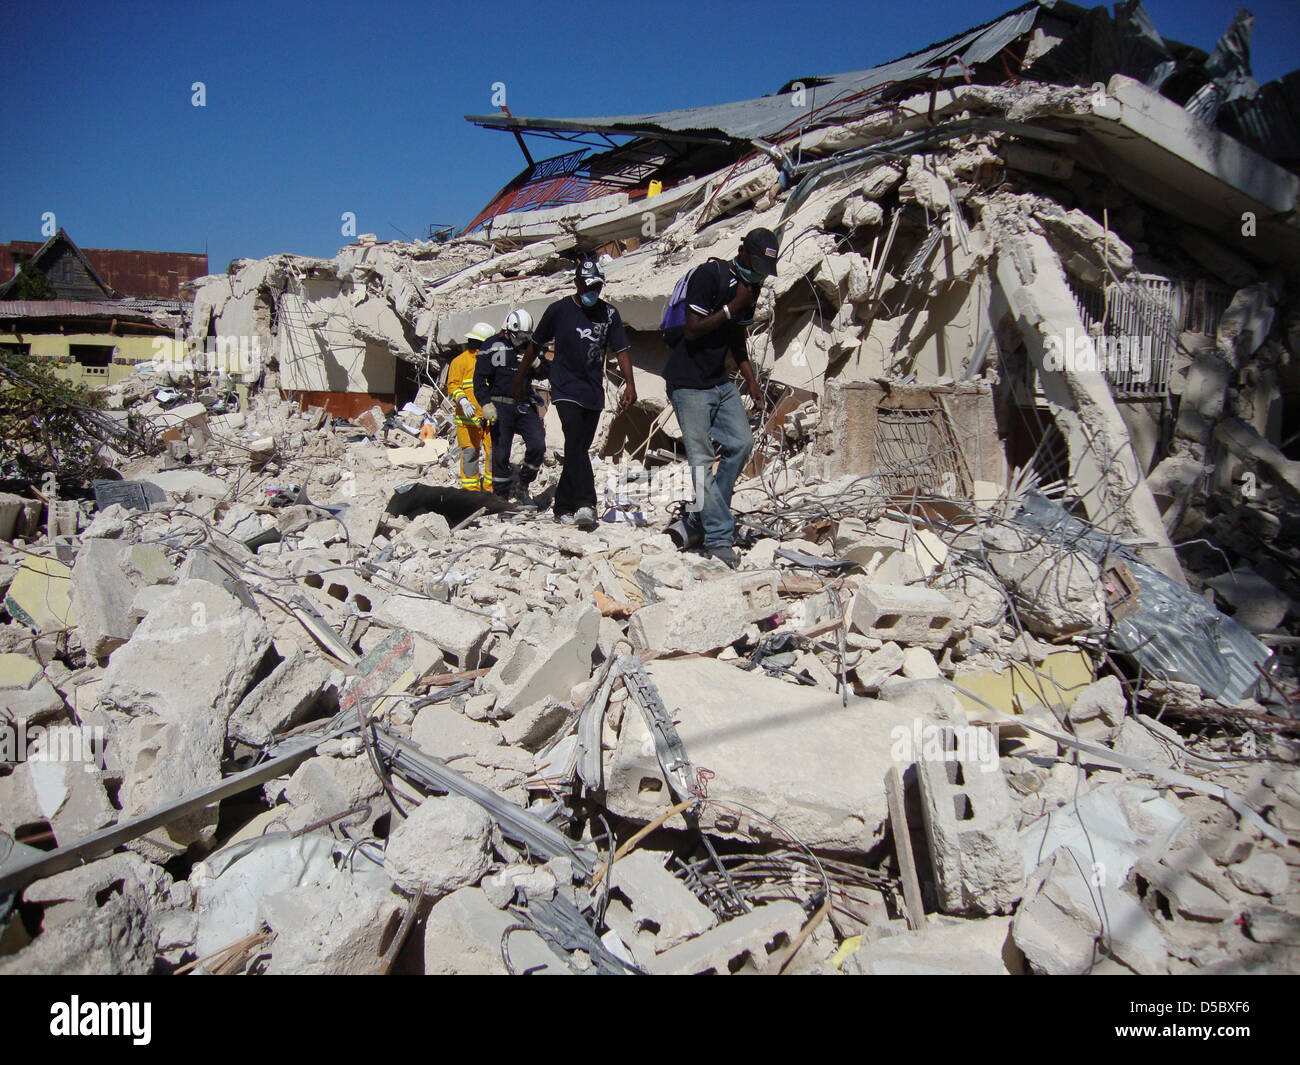 Menschen gehen am Montag (18.01.2010) in Port-au-Prince durch die Trümmer. Die internationale  Gemeinschaft steht im kleinen Karibikstaat Haiti vor einer gigantischen Herausforderung. Während Rettungsteams nach dem verheerenden Erdbeben von Port-au-Prince weiter in den Ruinen nach Überlebenden suchen, treffen sich Dutzende von Hilfsorganisationen aus aller Welt zu Beratungen über d Stock Photo